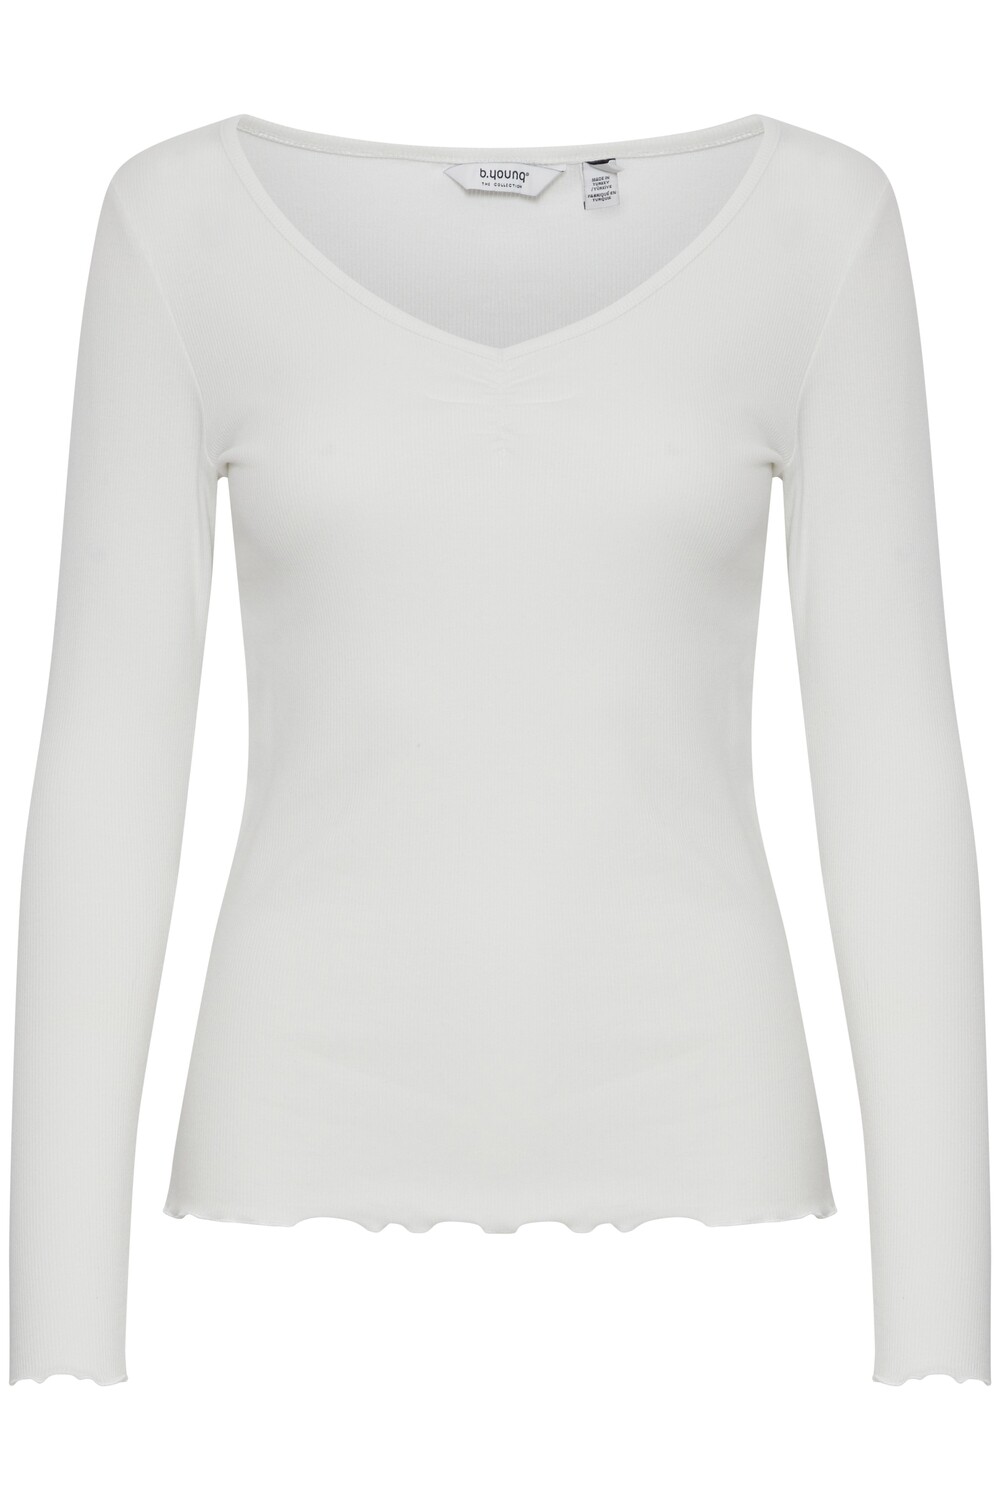 b.young– Sanana LS V T-Shirt (Off White) 